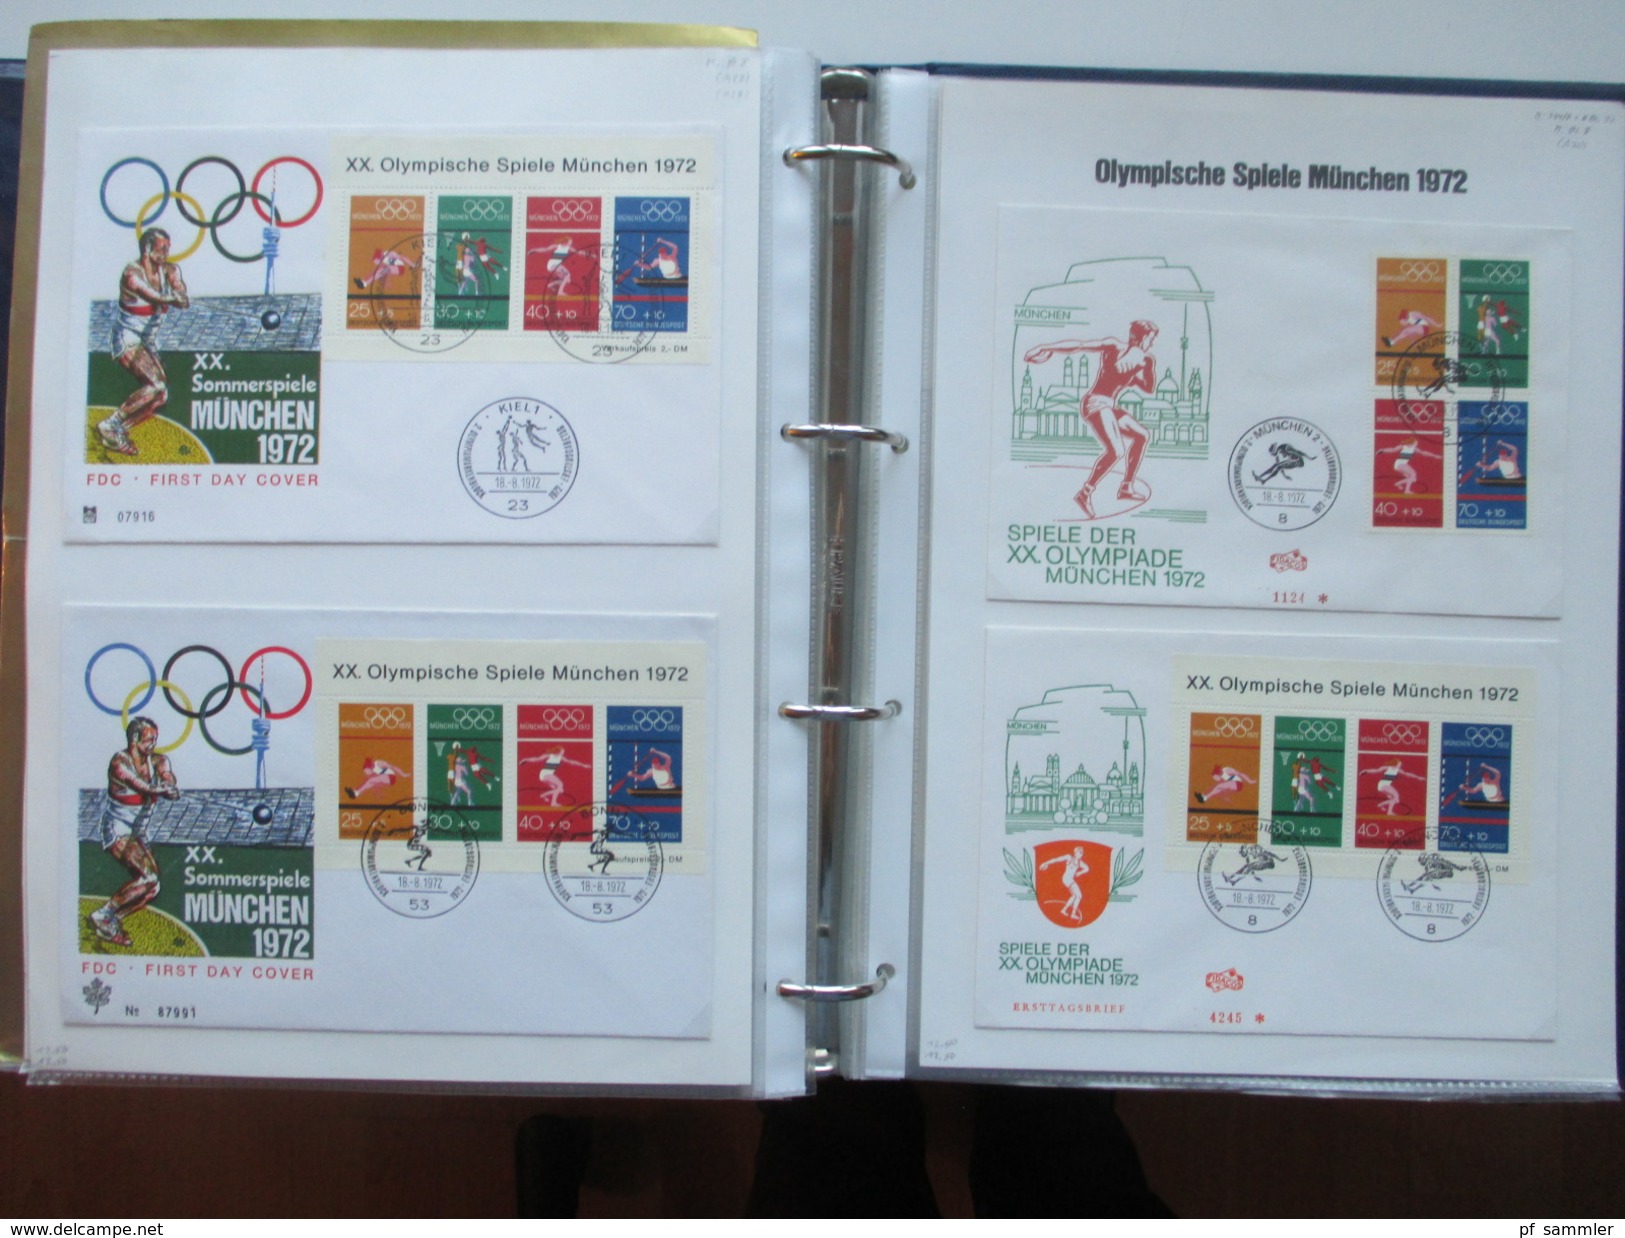 Olympische Spiele München 1972 Sammlung Sonderbelege / Karten mit Blocks und besseren Stücken!! Hoher Katalogwert!!